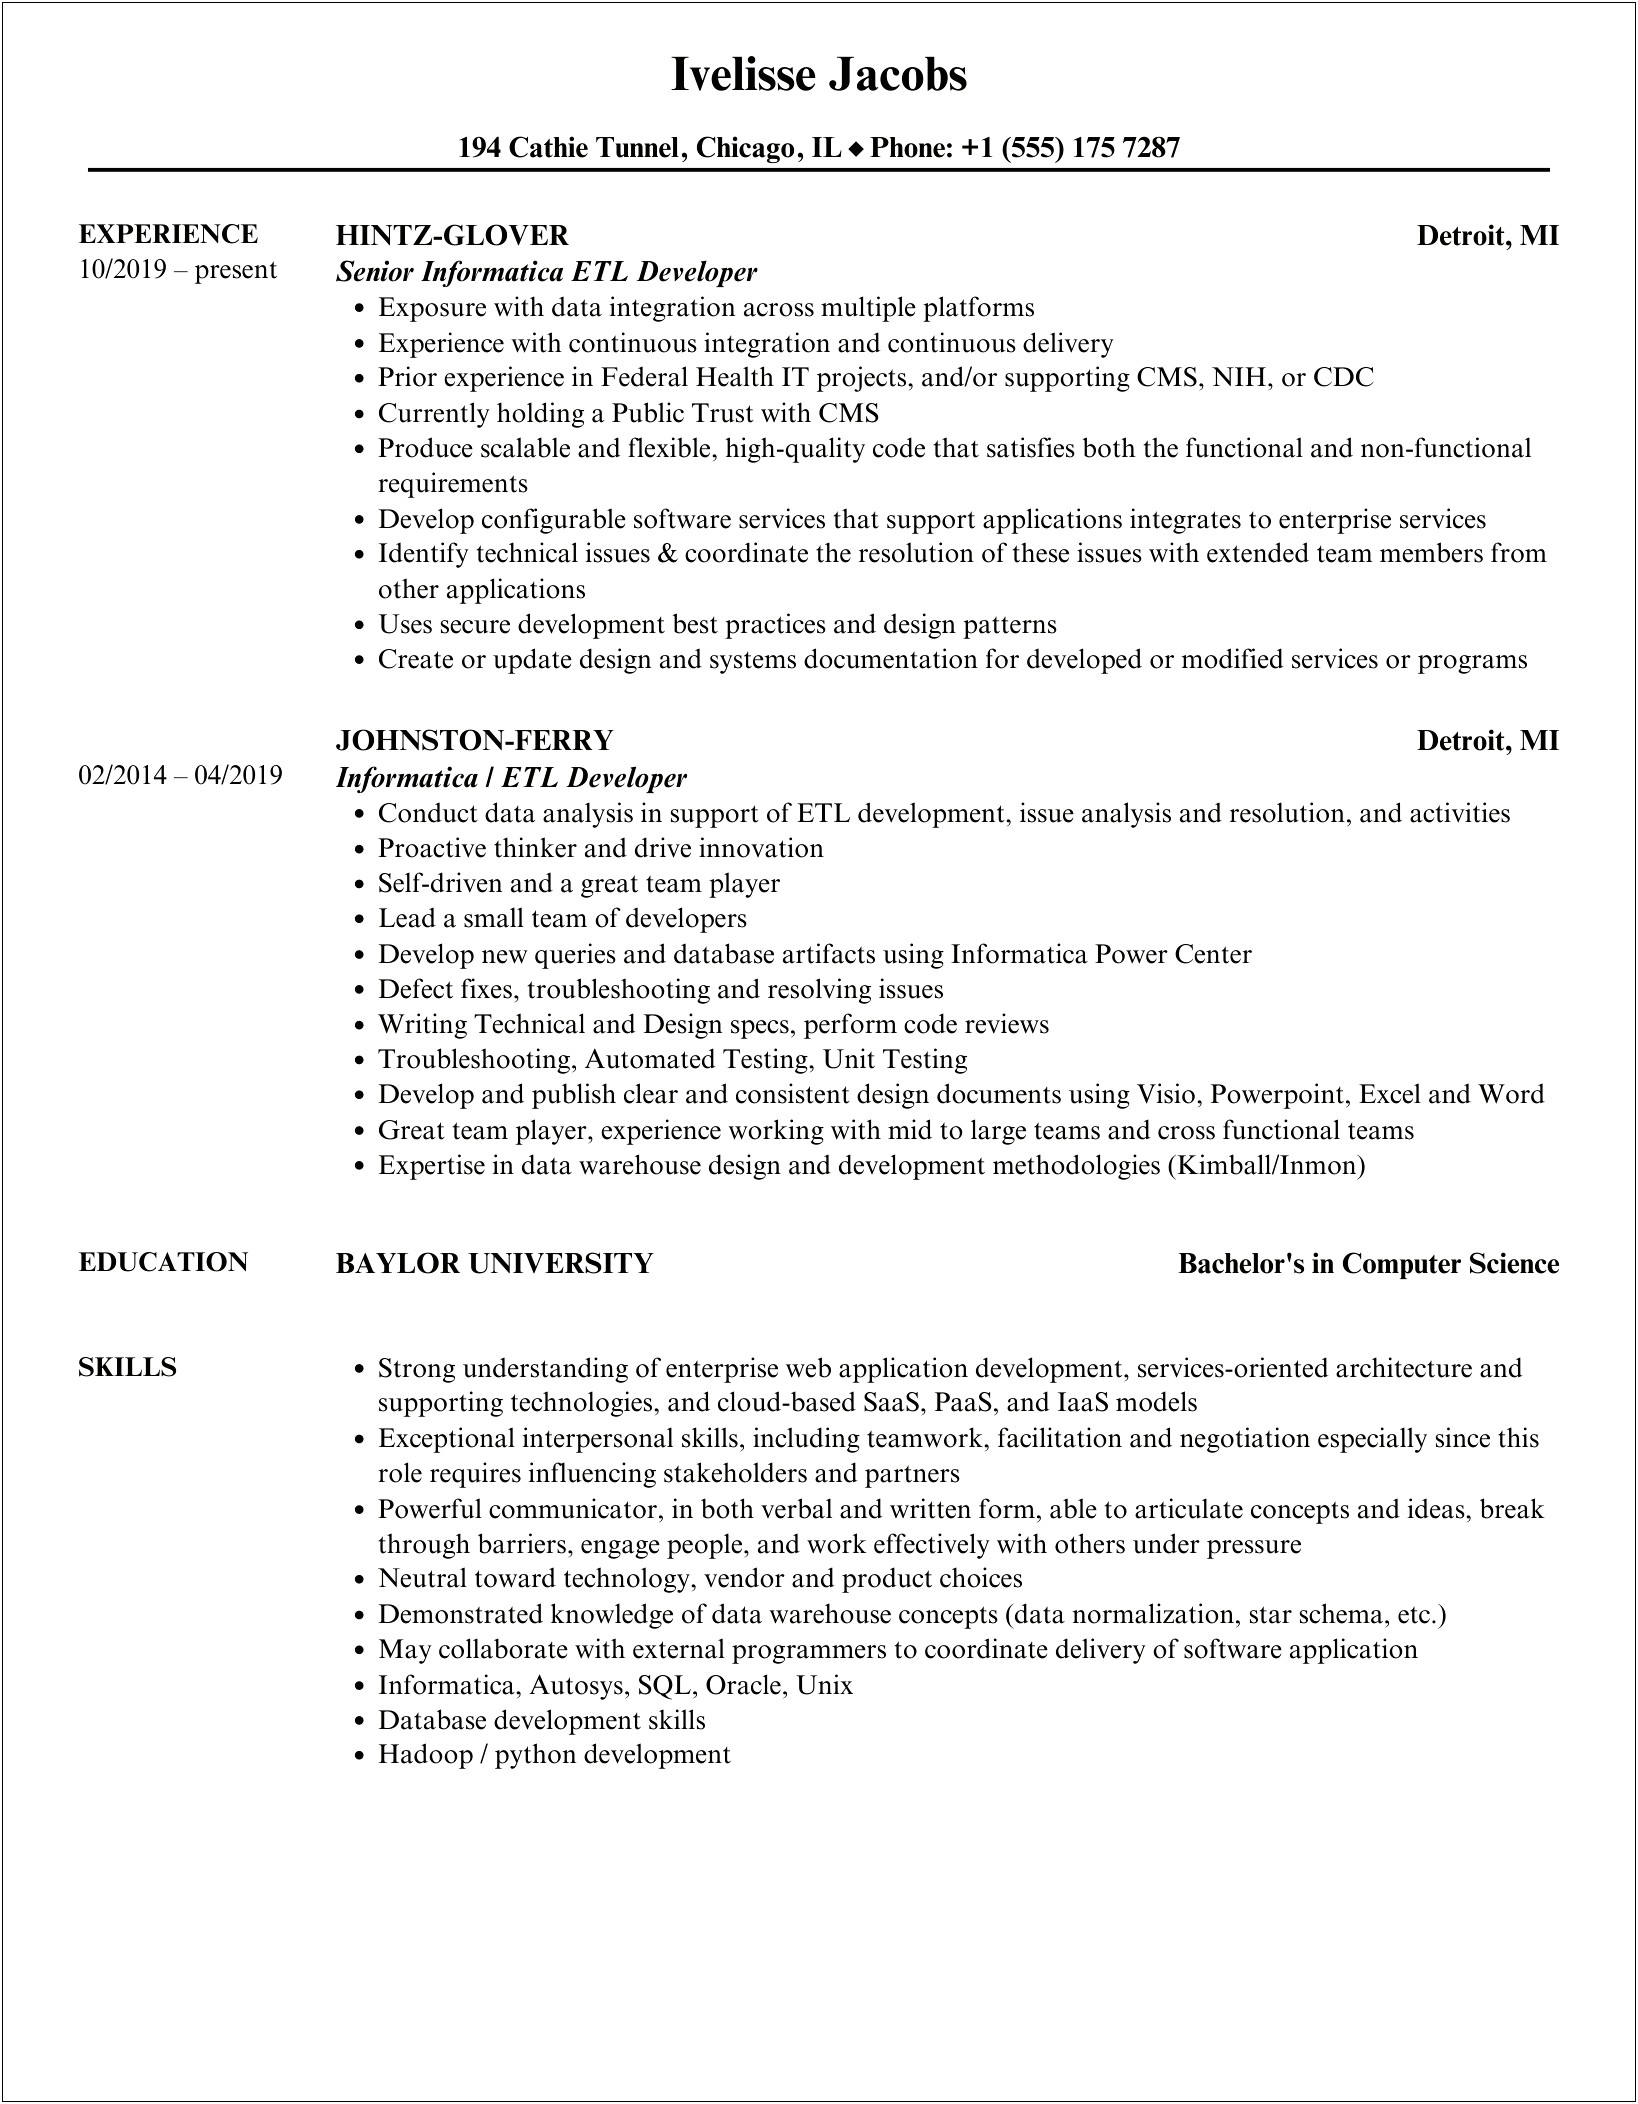 Sample Resume For Informatica Developer Fresher